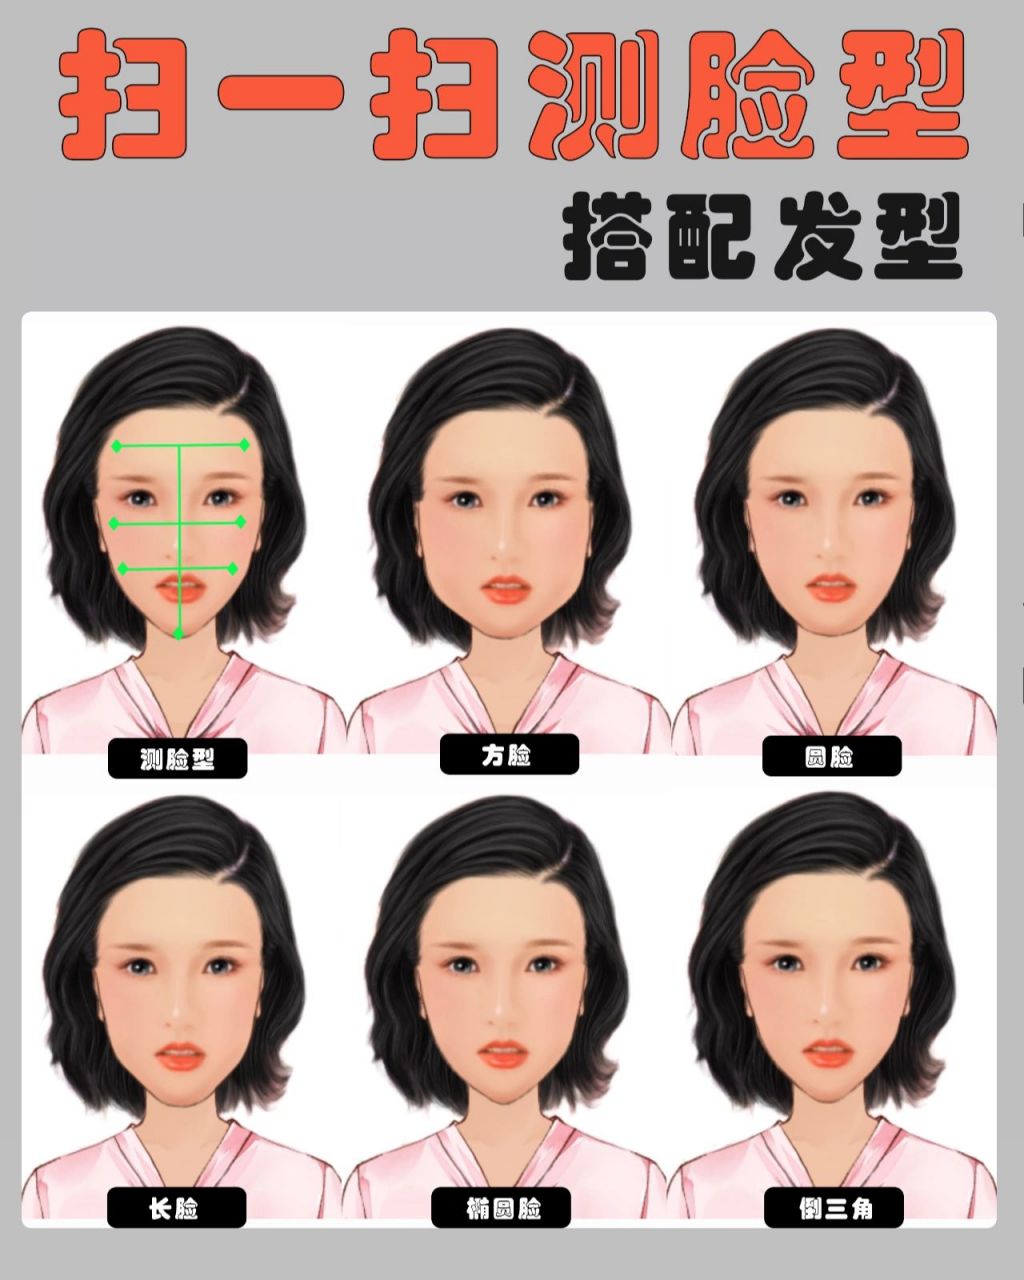 扫一扫测脸型搭配发型9799 废话不多说,看图只需366步就能选对